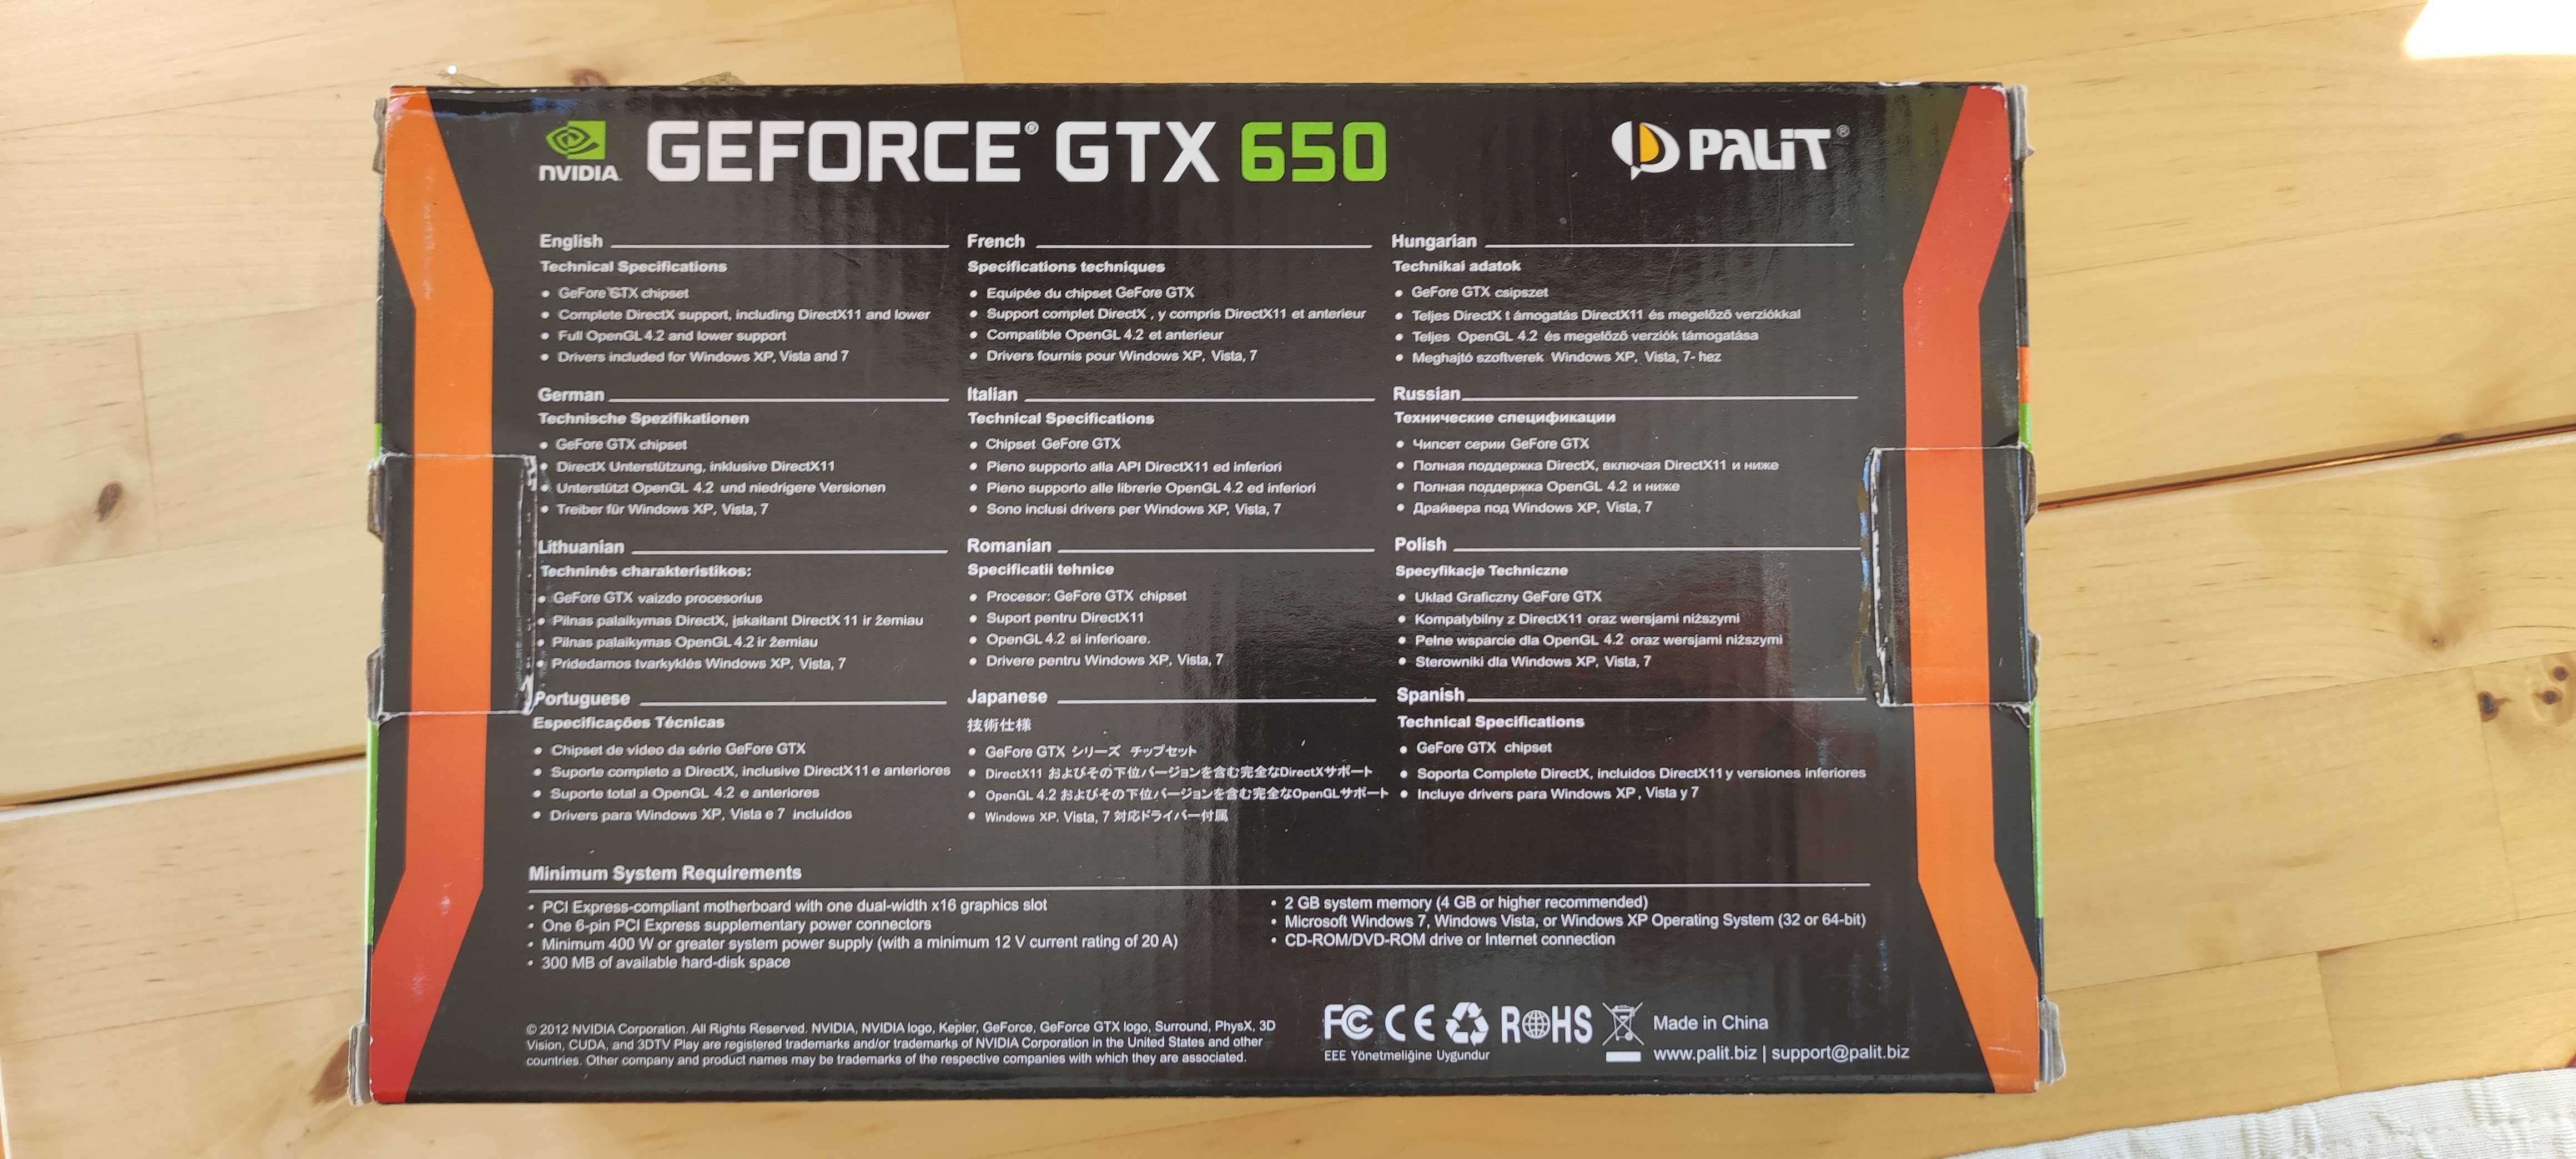 Nvidia GTS 450 / Nvidia GTX 650